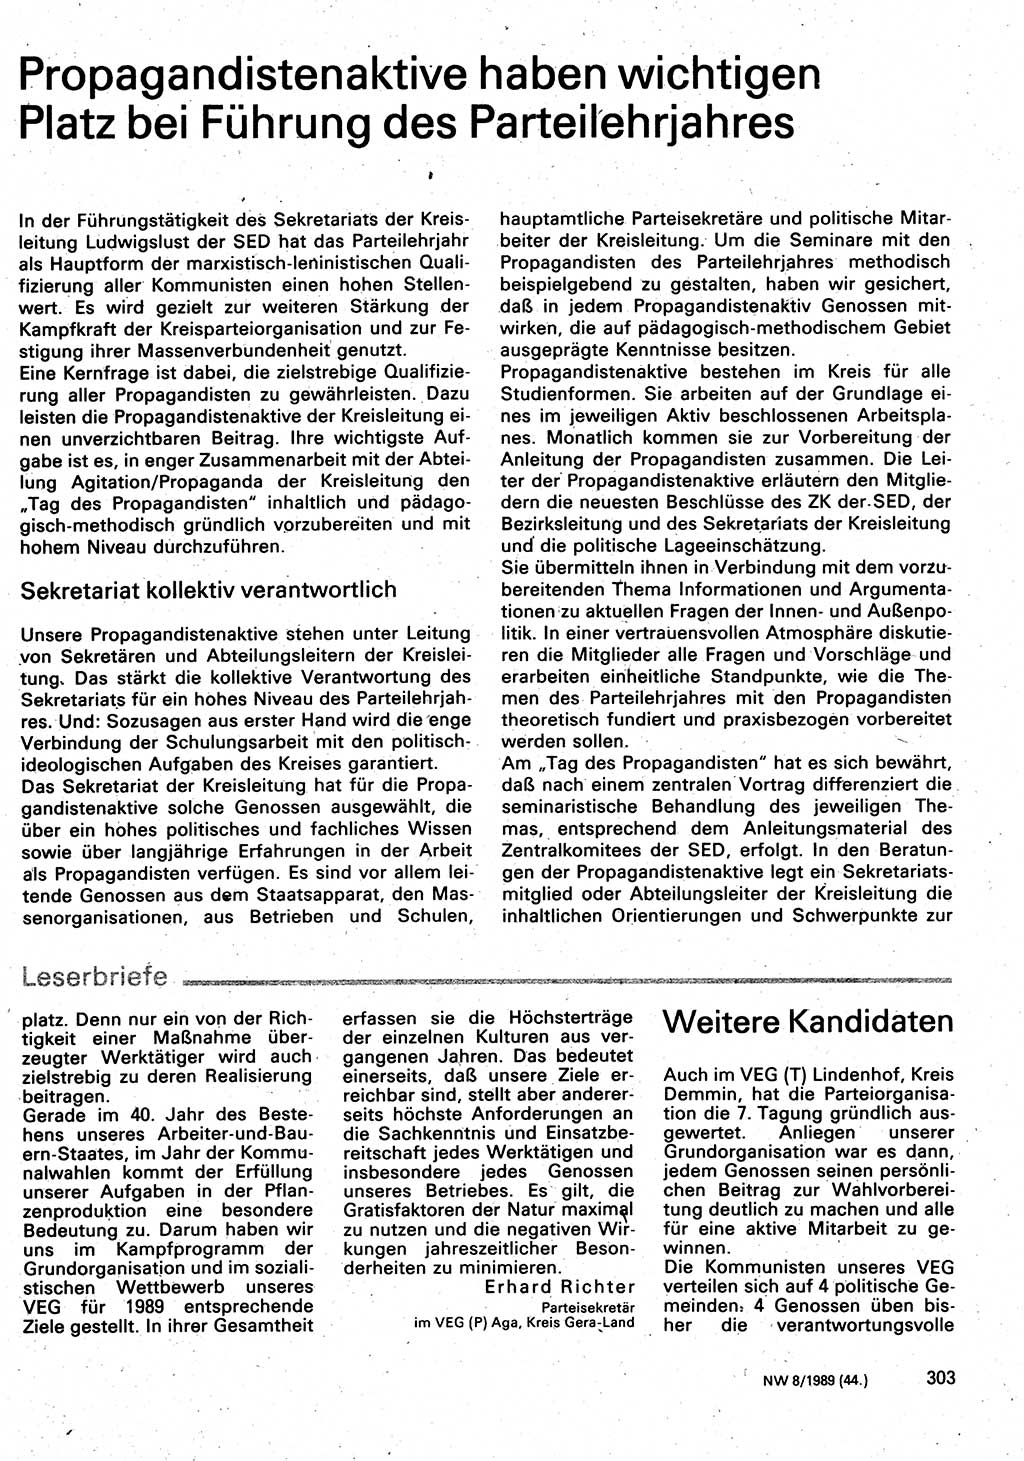 Neuer Weg (NW), Organ des Zentralkomitees (ZK) der SED (Sozialistische Einheitspartei Deutschlands) für Fragen des Parteilebens, 44. Jahrgang [Deutsche Demokratische Republik (DDR)] 1989, Seite 303 (NW ZK SED DDR 1989, S. 303)